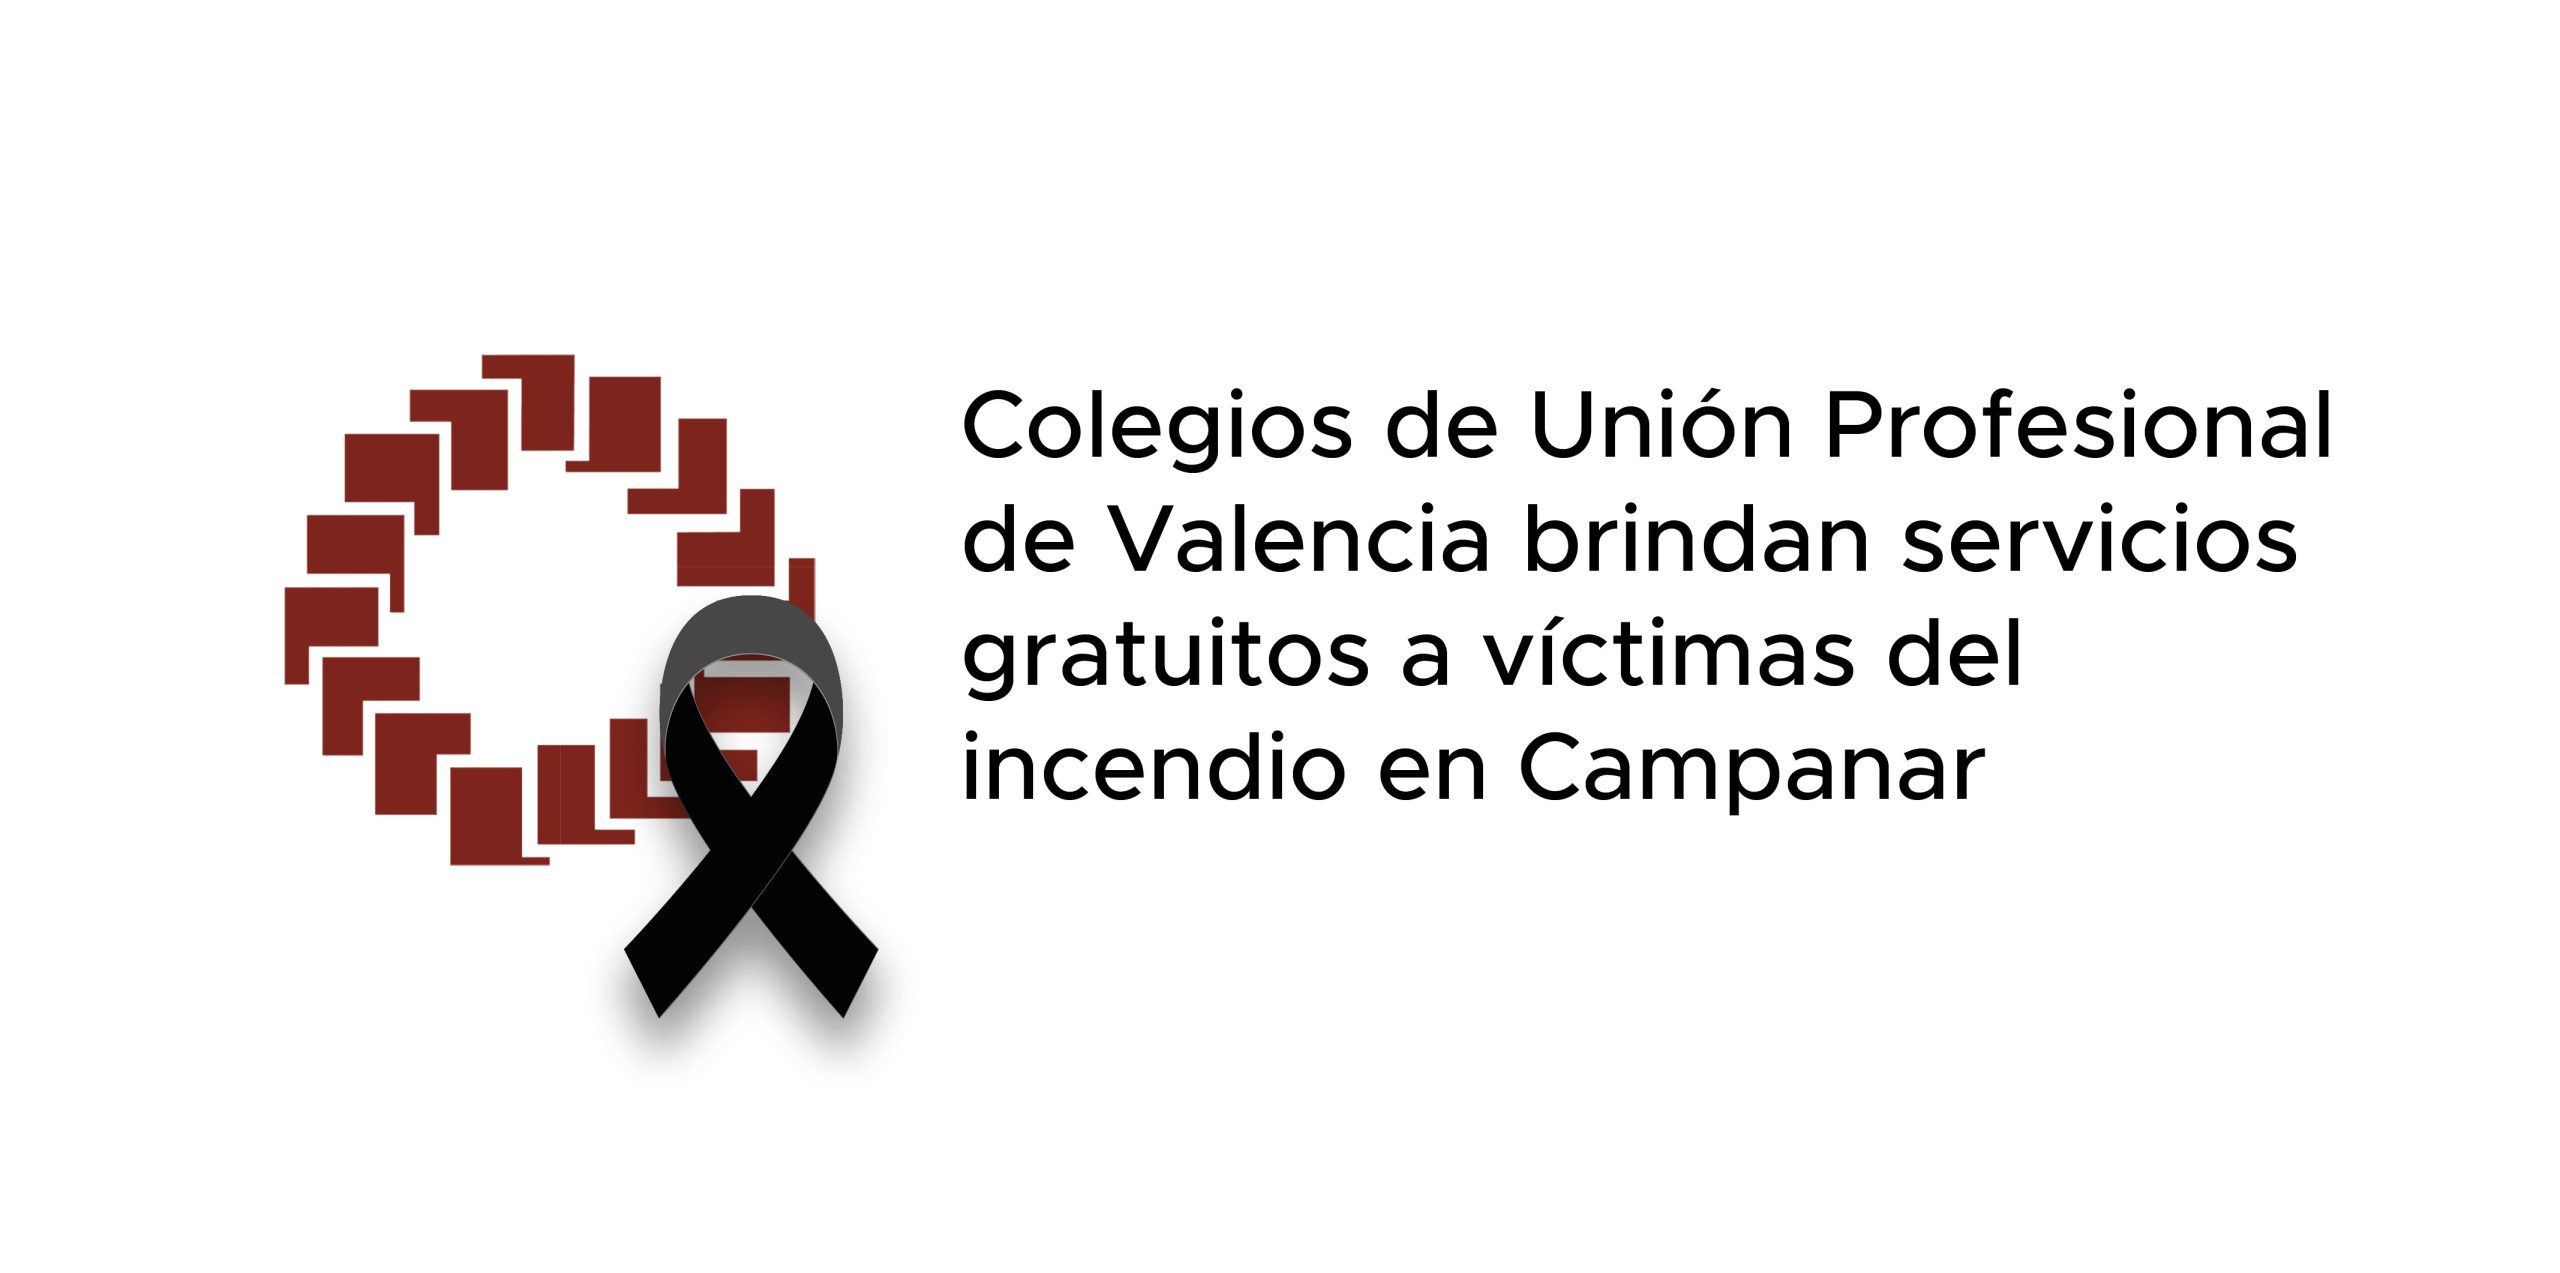 Colegios de Unión Profesional de Valencia brindan servicios gratuitos a víctimas del incendio en Campanar